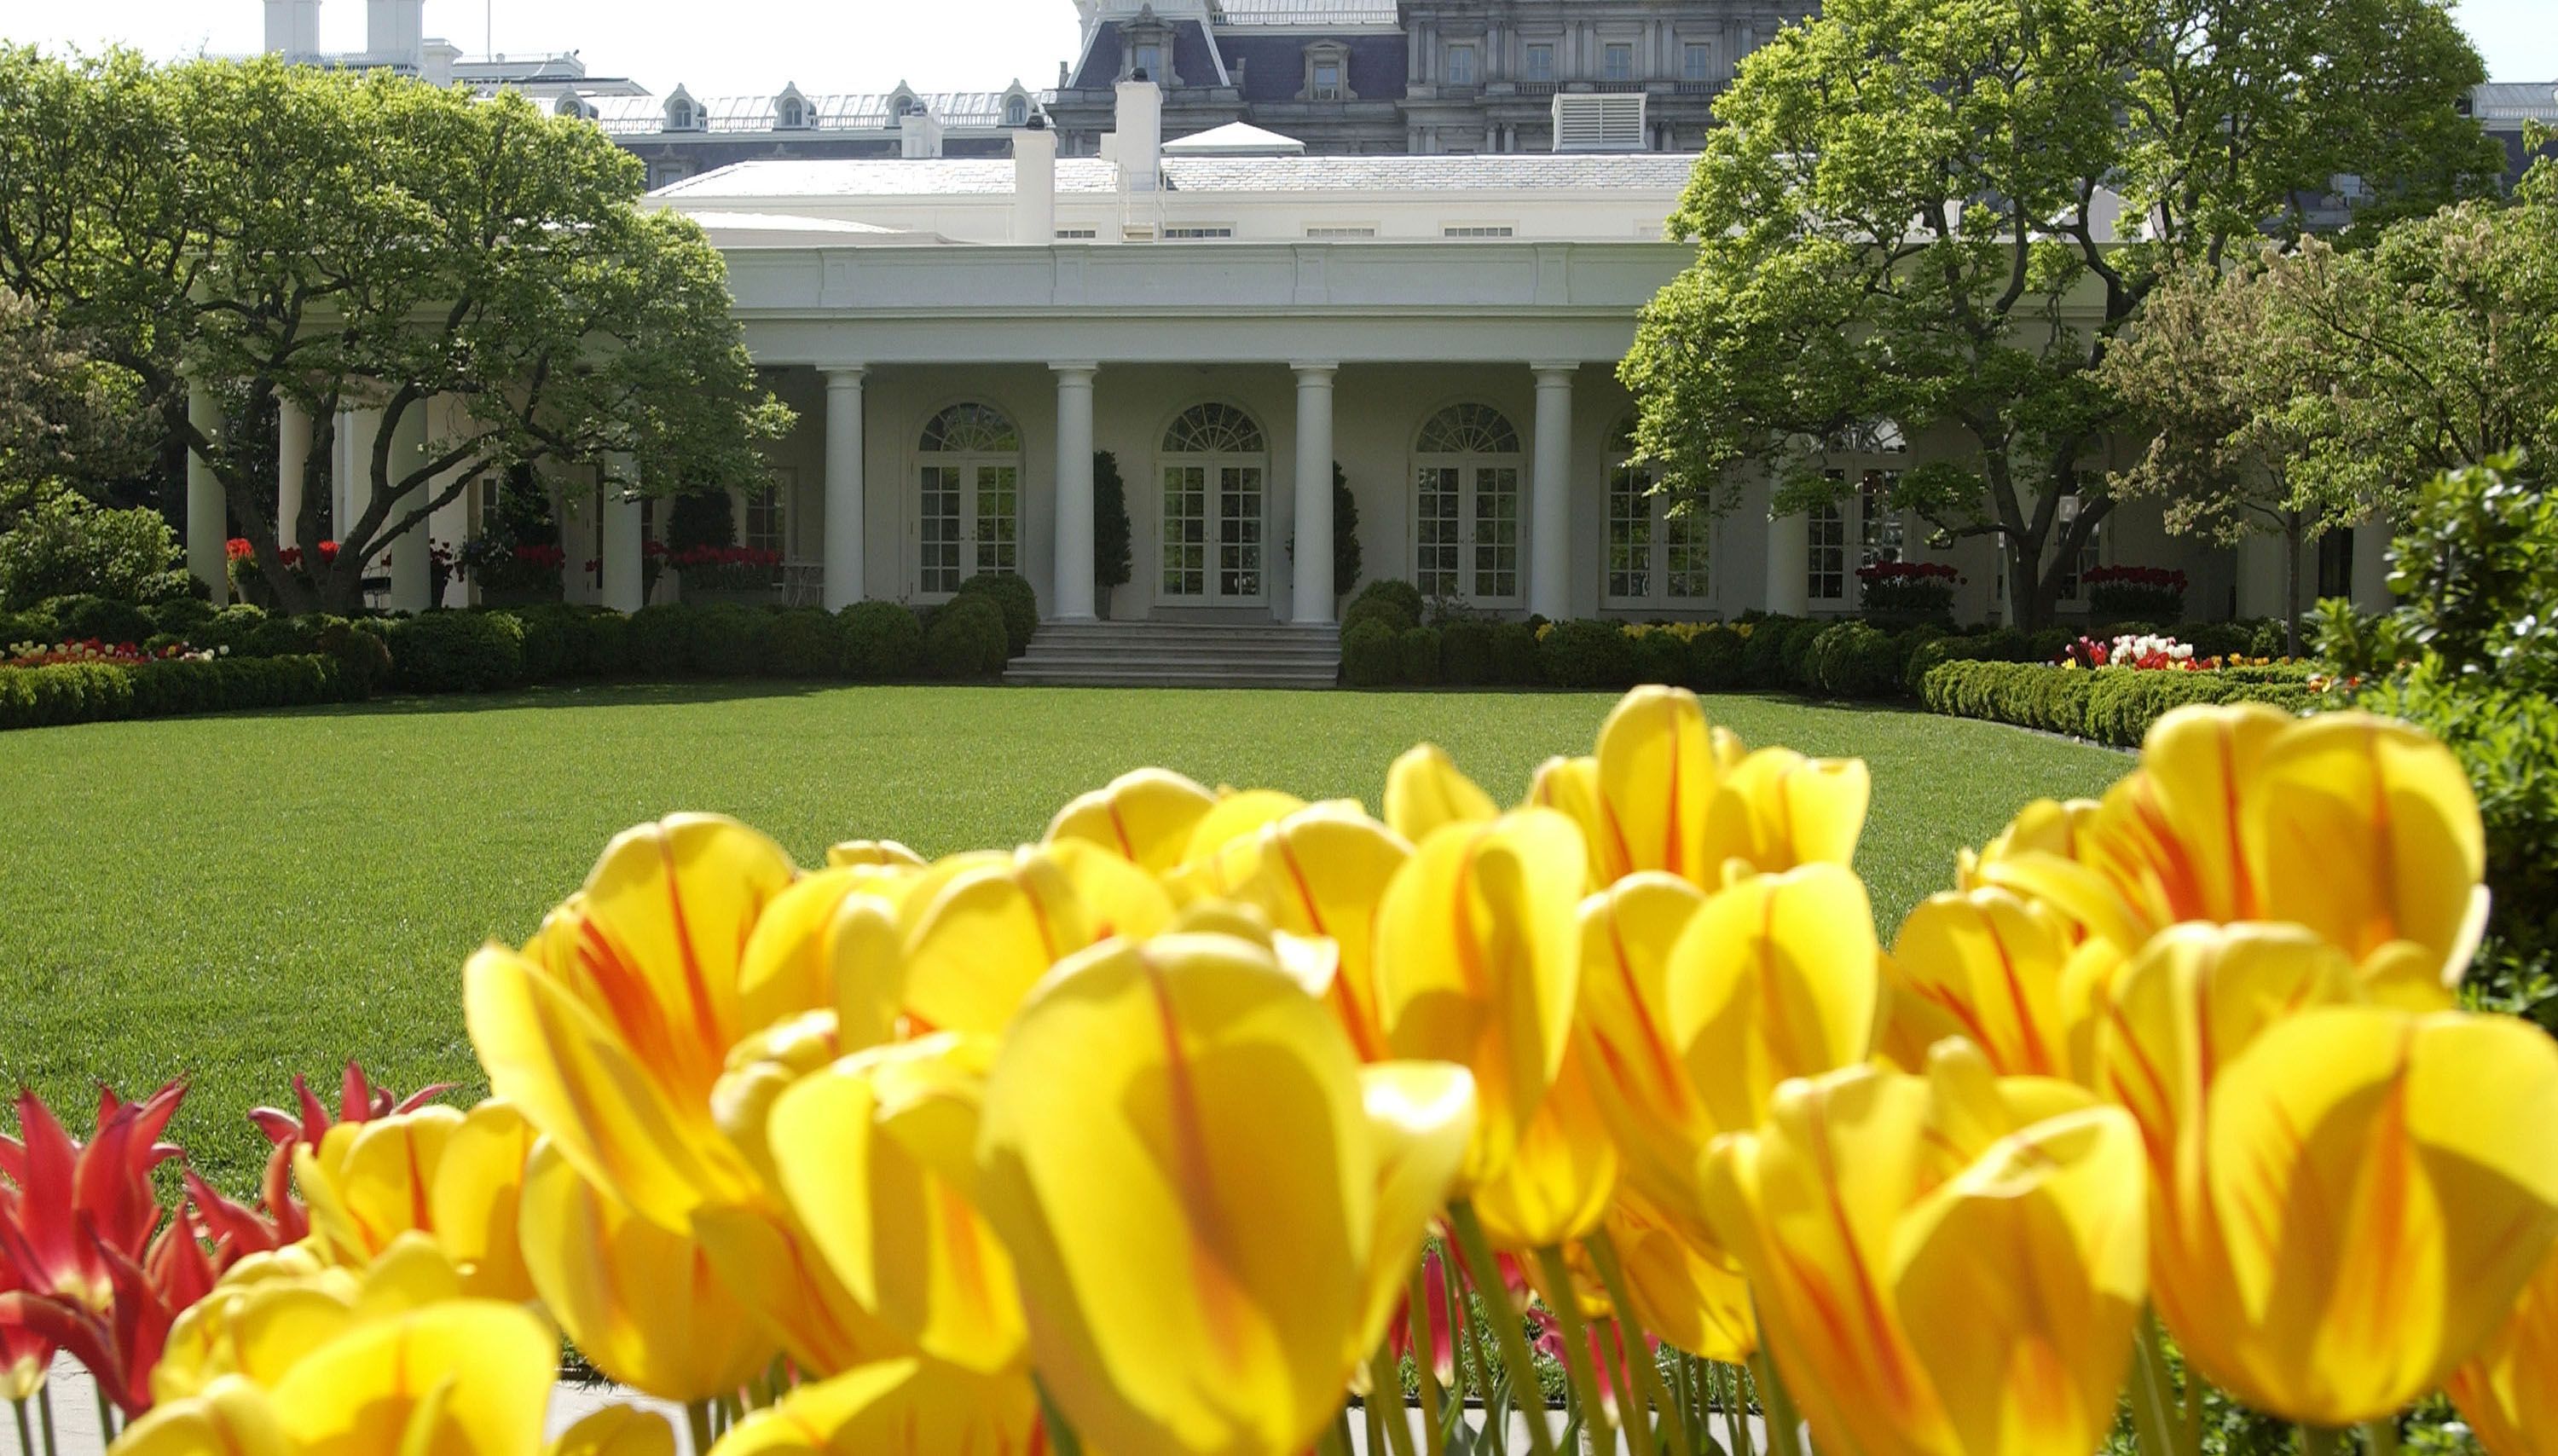 garden tour white house